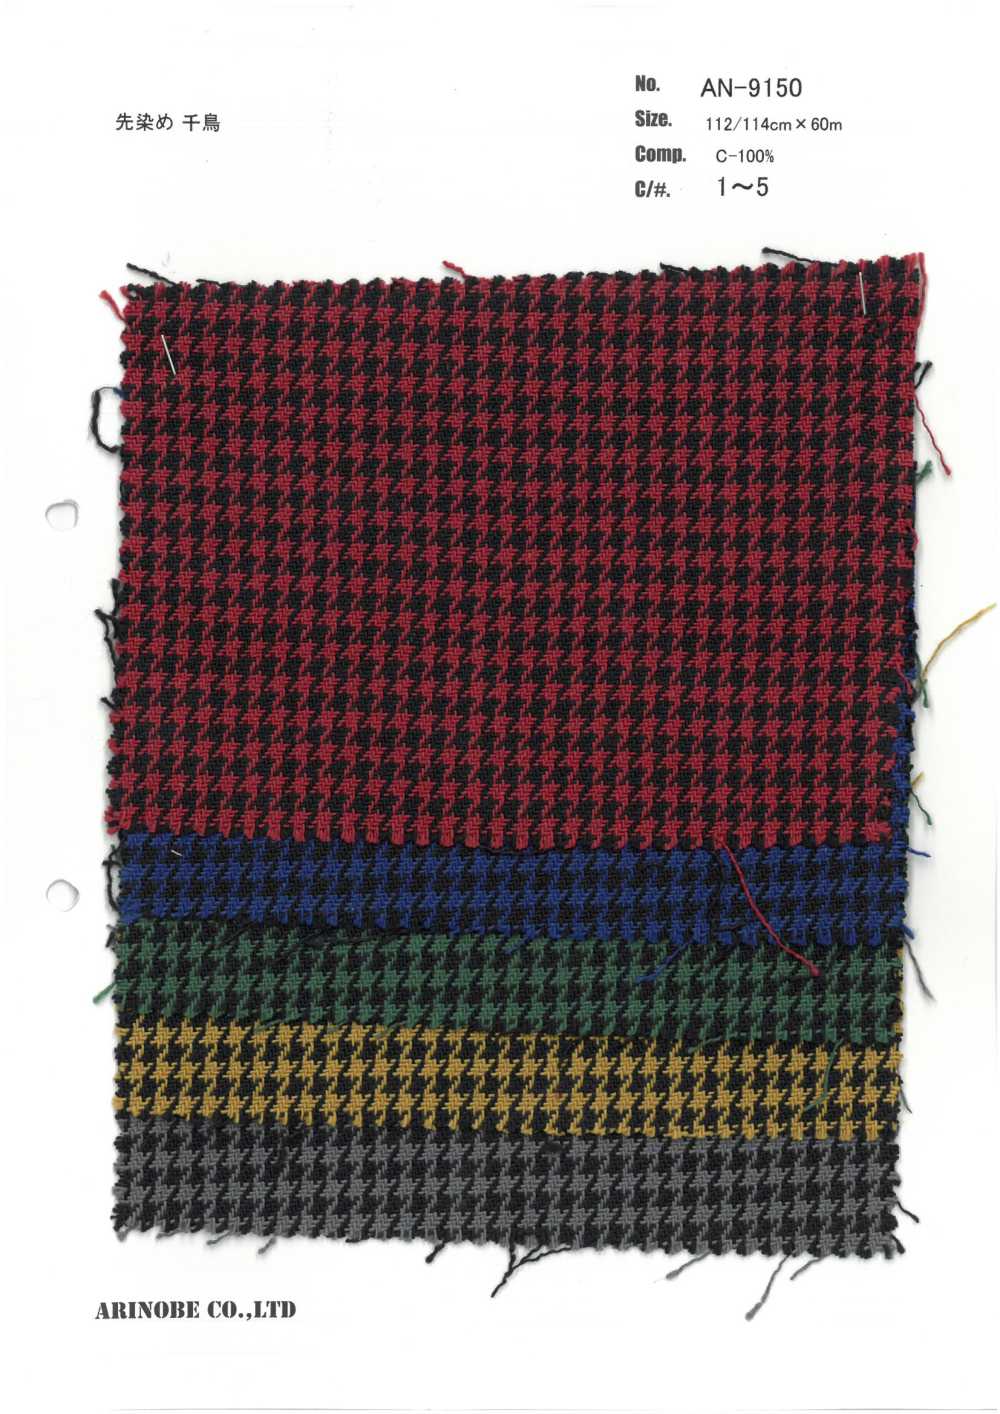 AN-9150 Enrejado De Pata De Gallo Teñido Con Hilo[Fabrica Textil] ARINOBE CO., LTD.